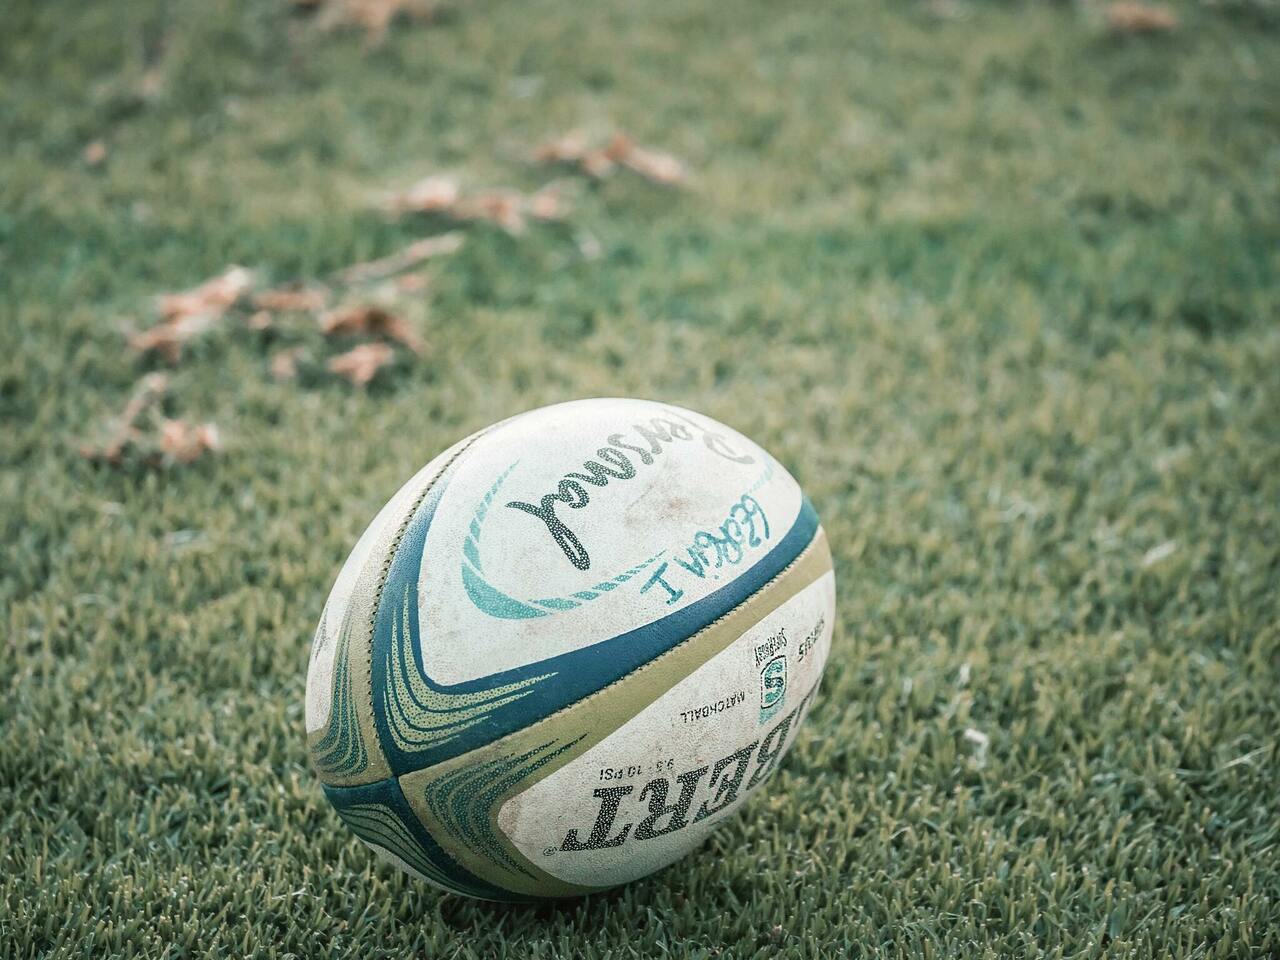 Découvrez le ballon ovale avec AuRA Rugby Tour 2023 place Bellecour vendredi et samedi